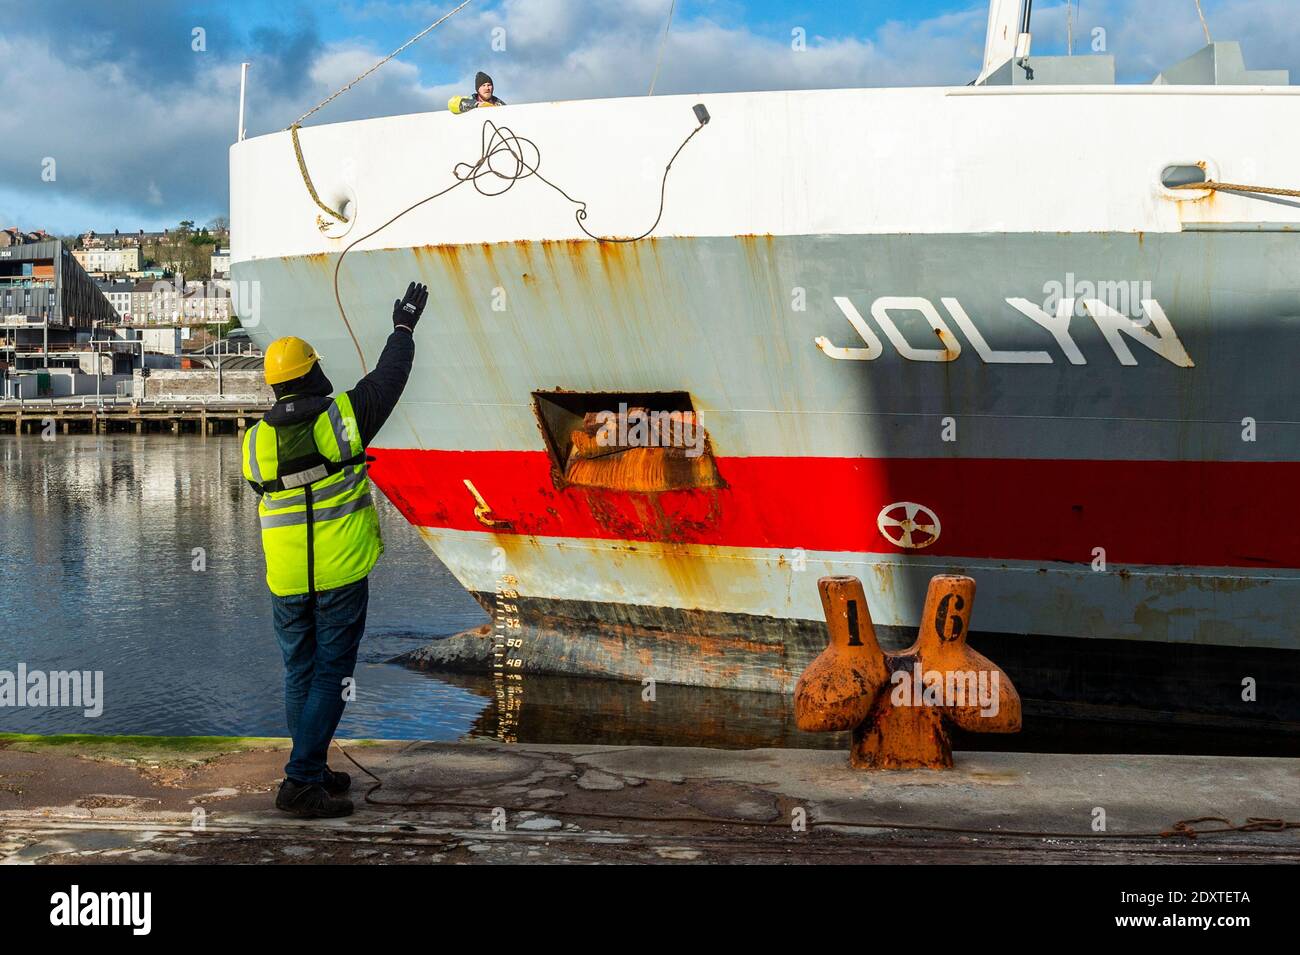 Cork, Irlande. 24 décembre 2020. Le cargo général 'Jolyn' arrime cet après-midi à Kennedy Quay avec une charge d'aliments pour animaux. Elle sort le 30 décembre. Crédit : AG News/Alay Live News Banque D'Images